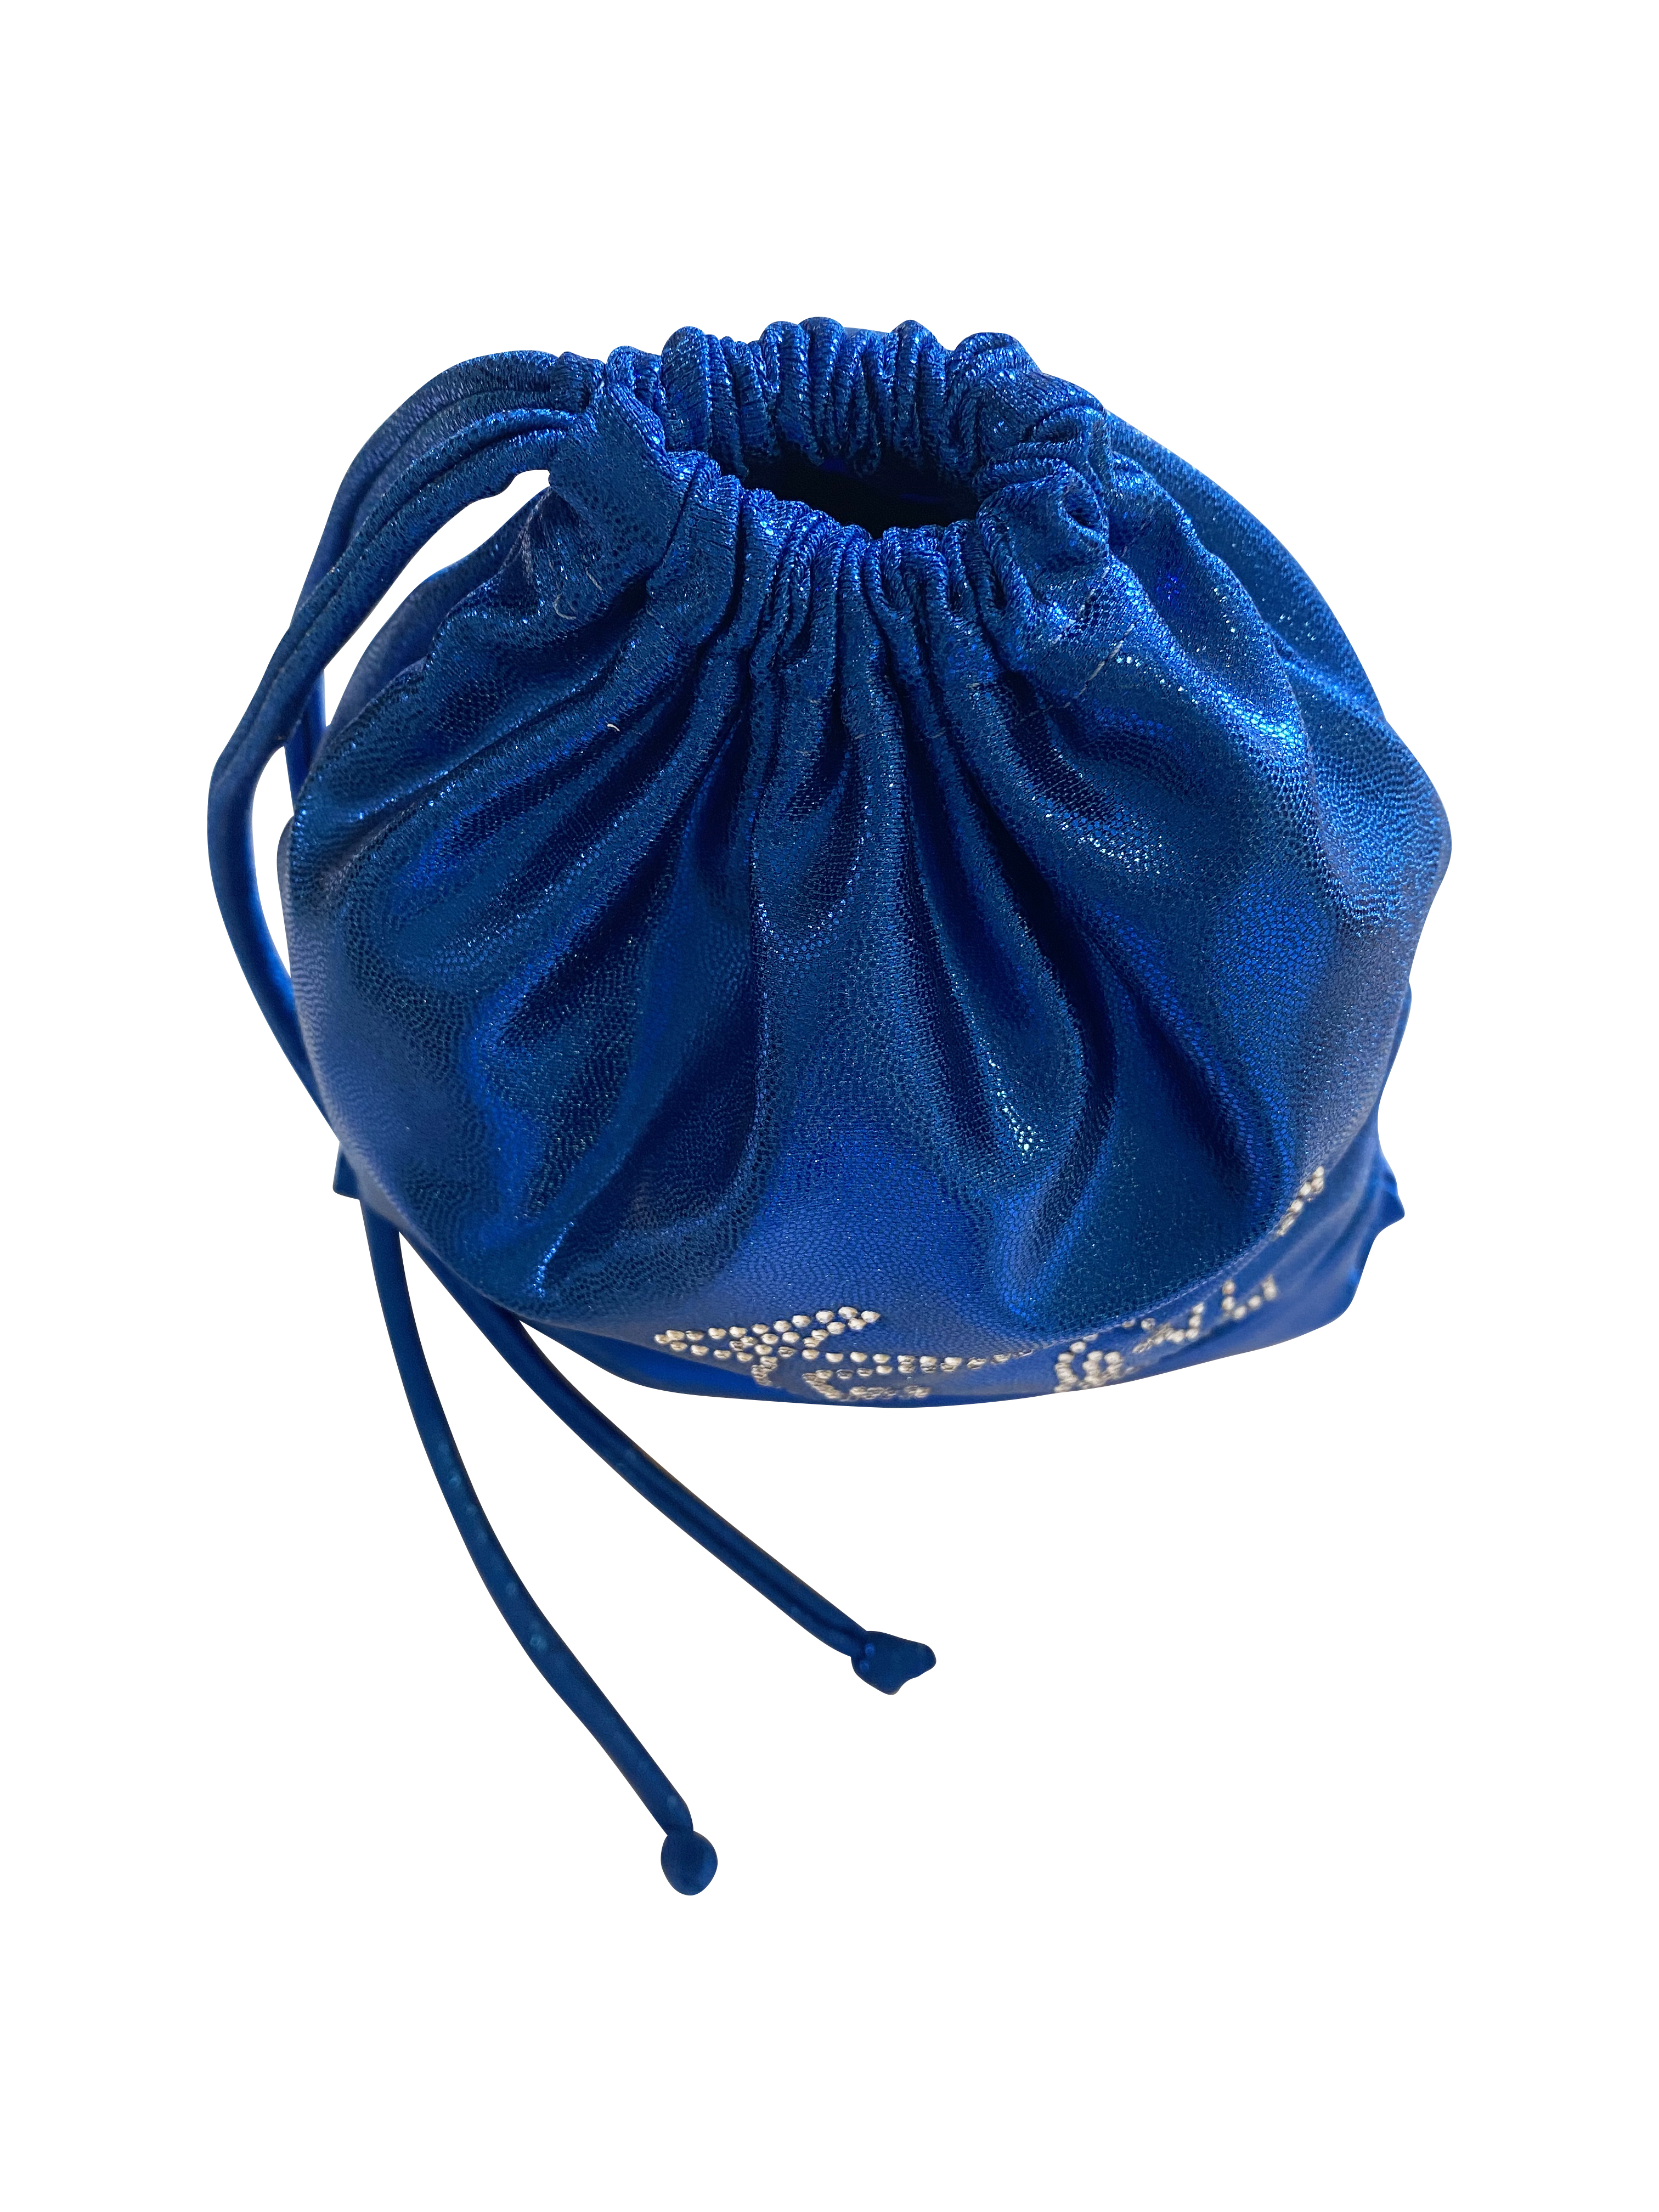 ROYAL BLUE SHINY MYST GYMNAST GRIP BAG 8x10"